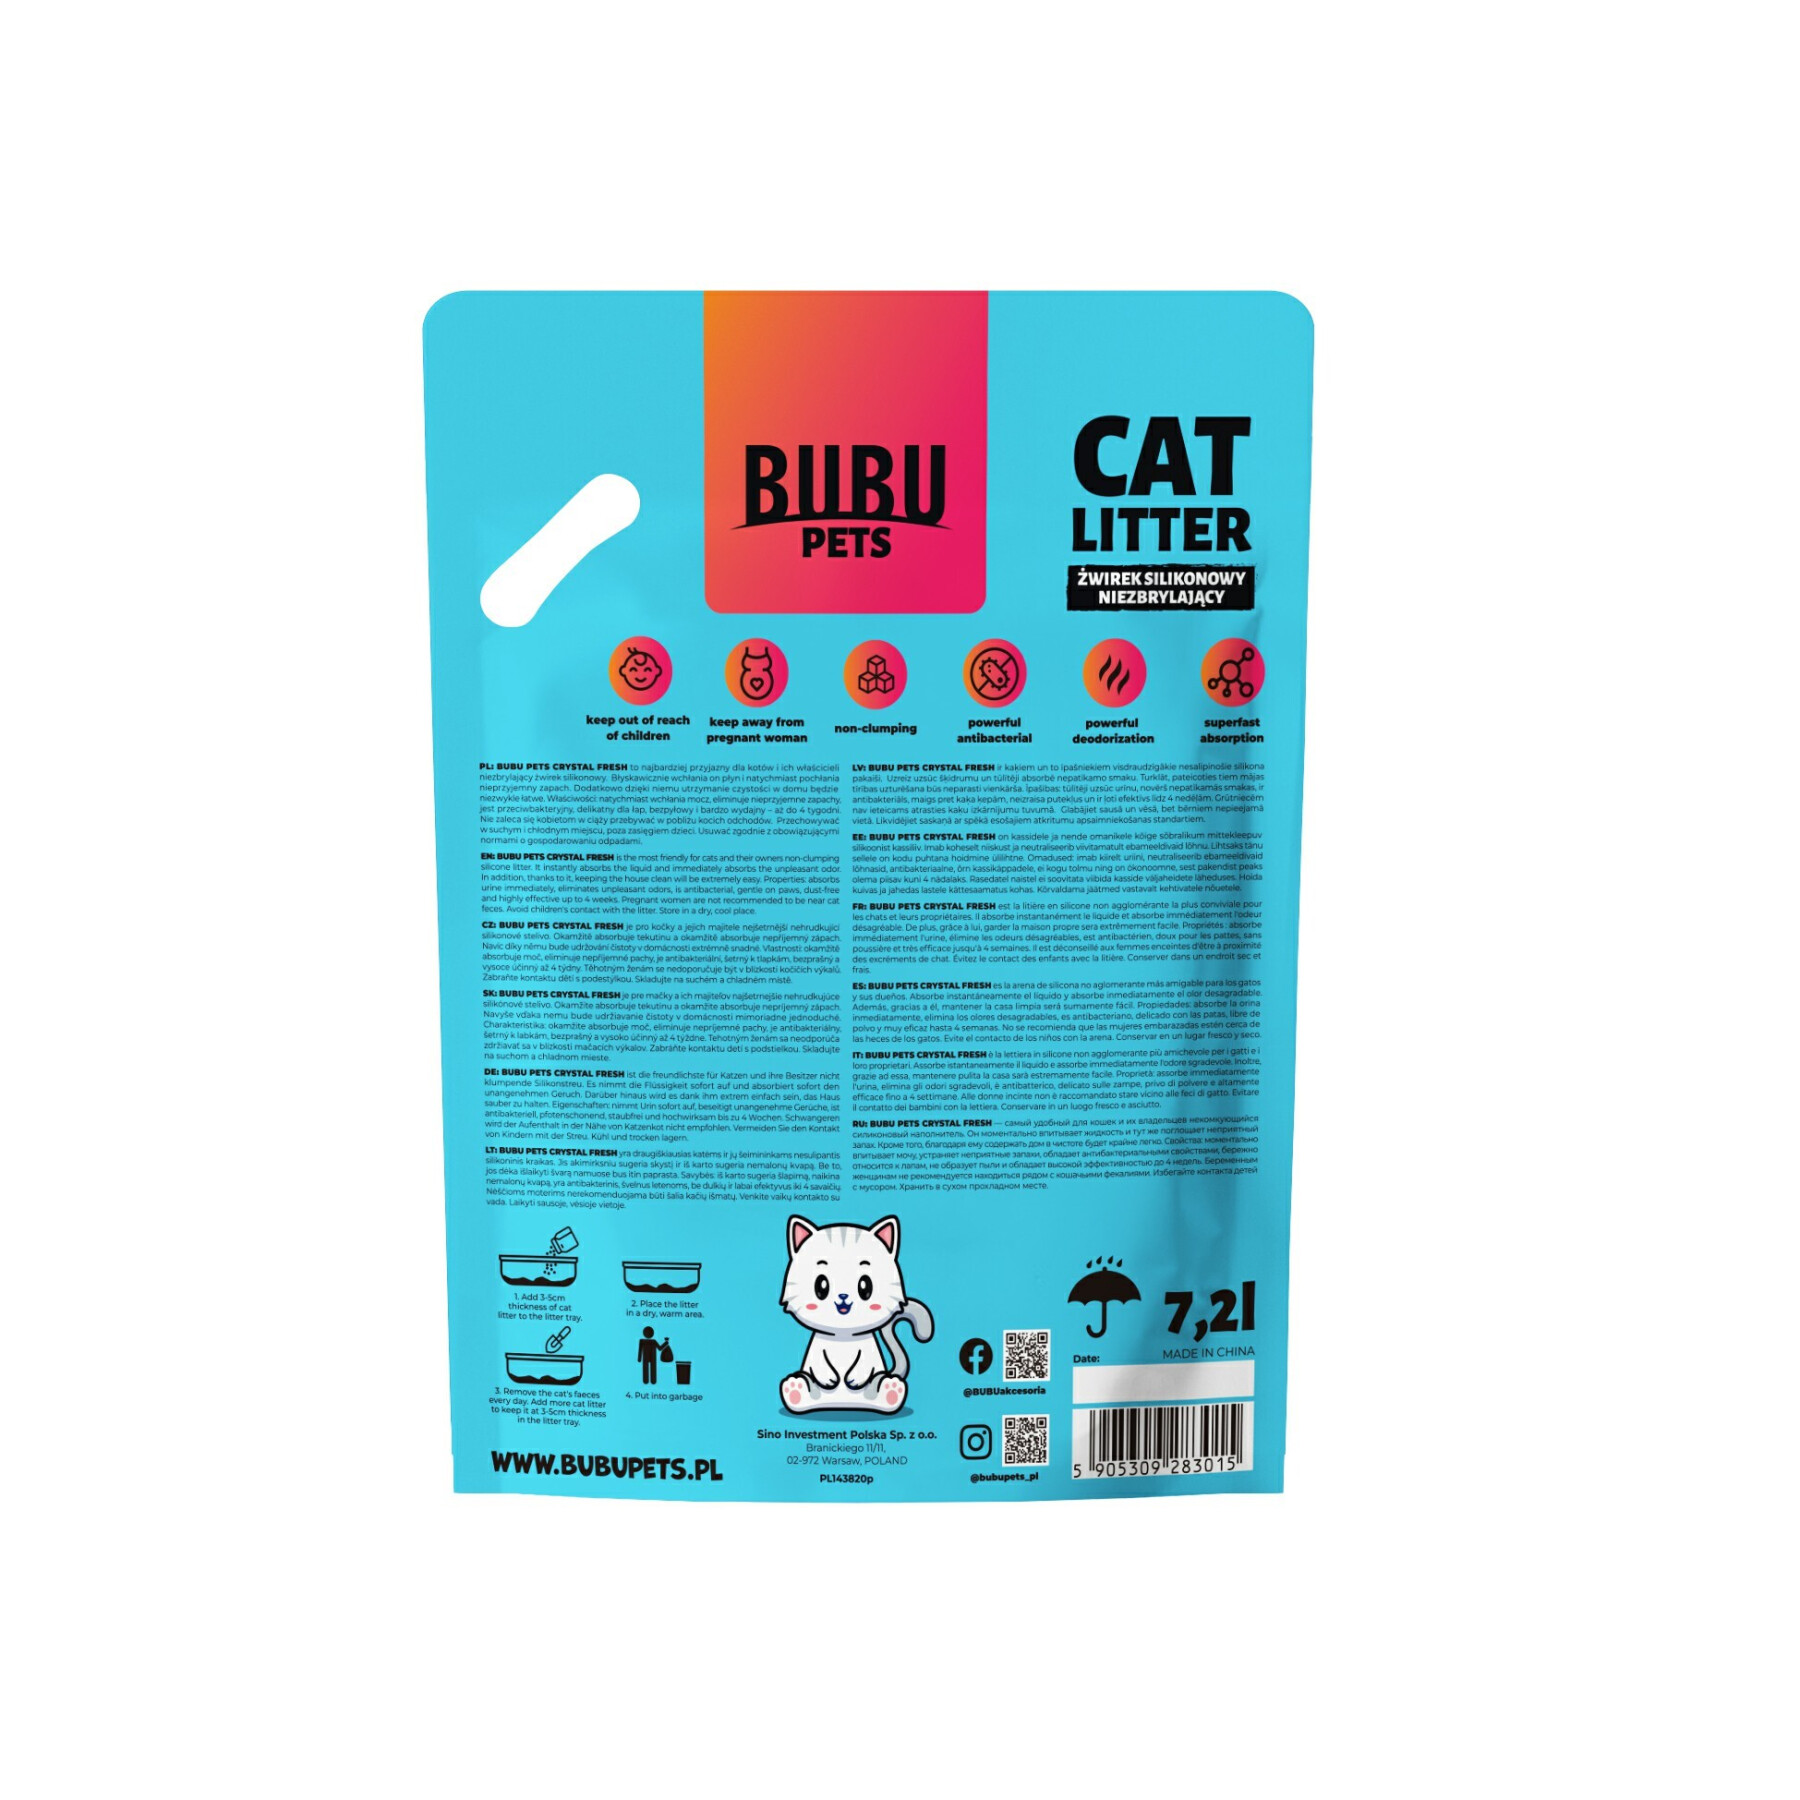 Litière pour chat en gel de silice BUBU Pets Original